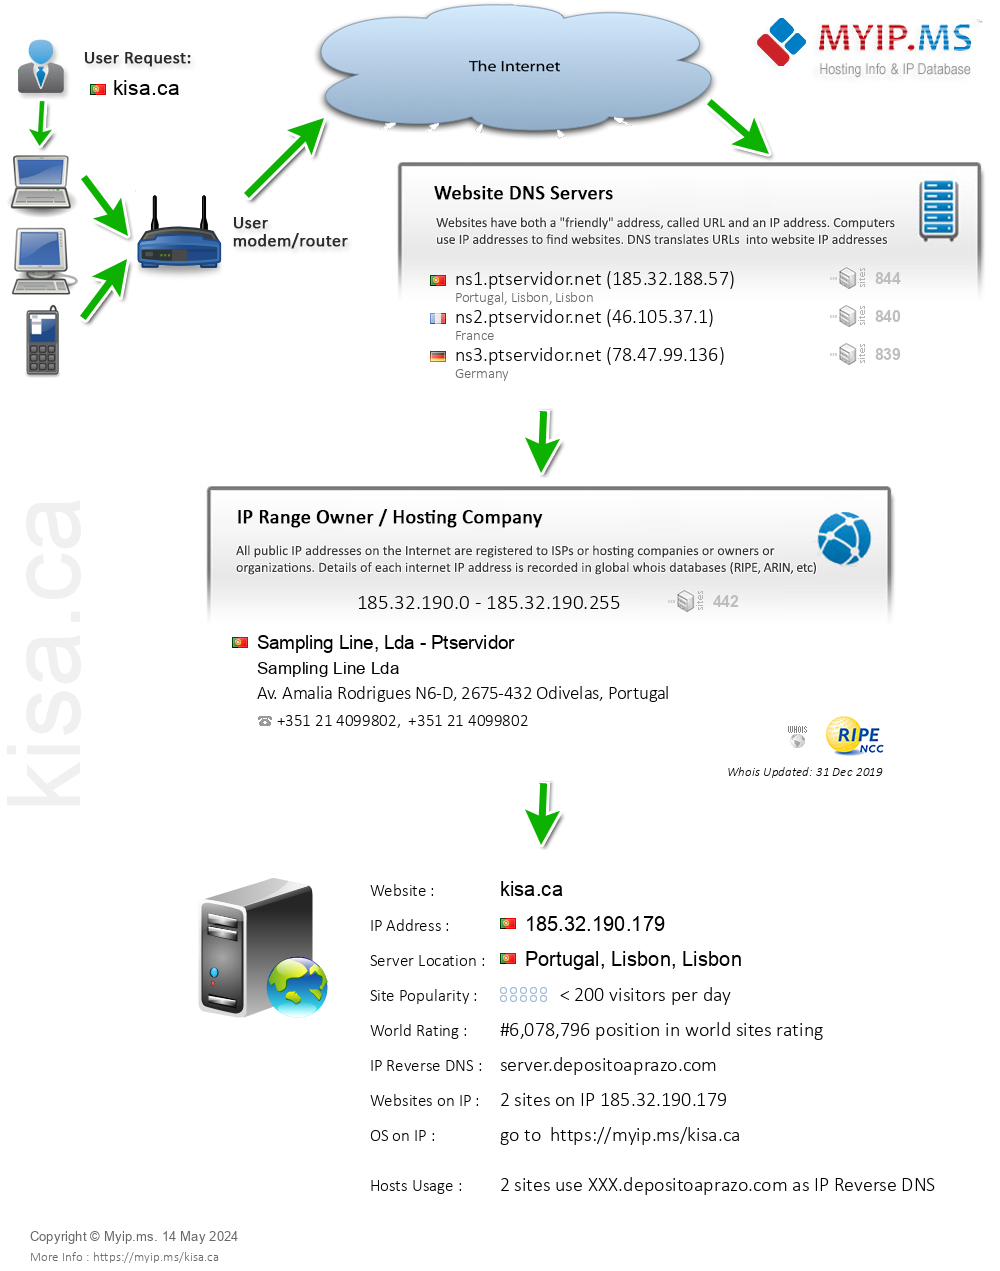 Kisa.ca - Website Hosting Visual IP Diagram